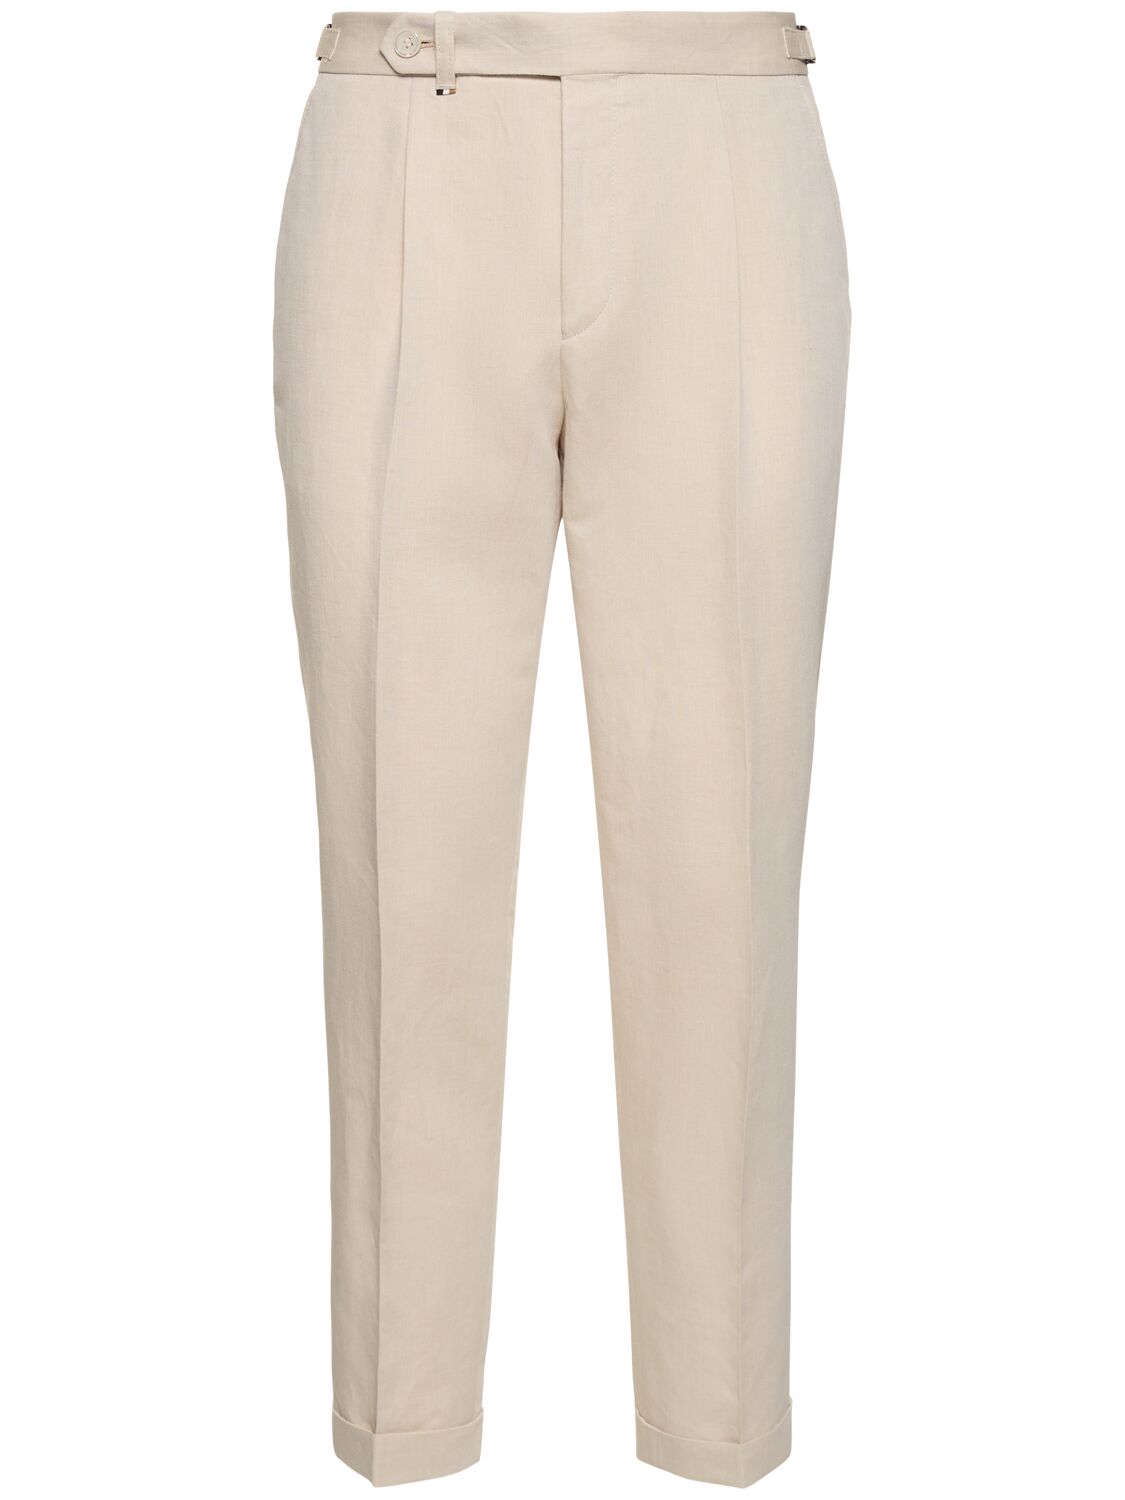 Hugo Boss Perin Linen & Cotton Trousers In Dark Beige